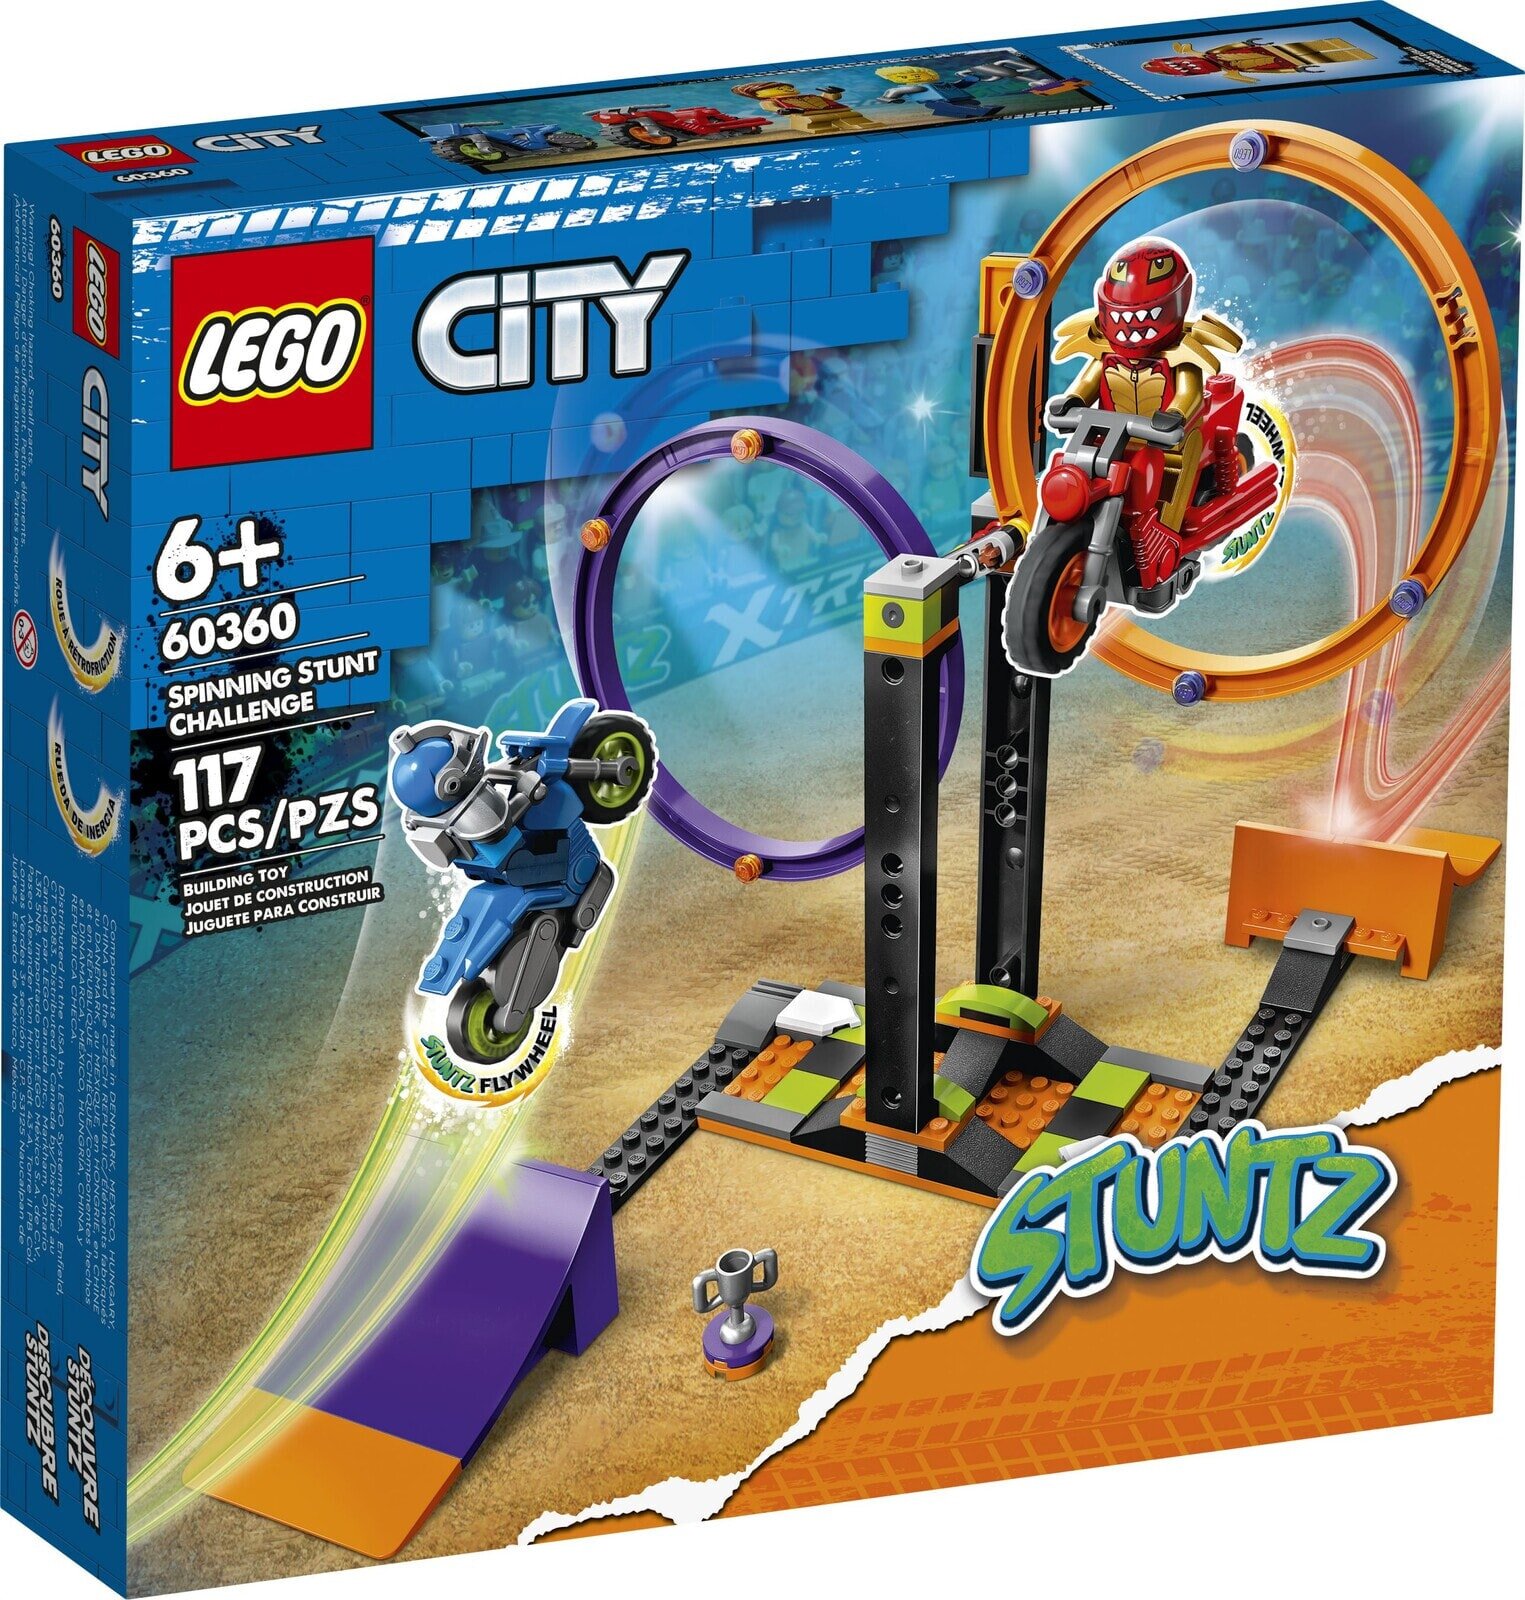 Набор с элементами конструктора LEGO City 60360 Spinning Stunt Challenge Испытание каскадеров с вращением